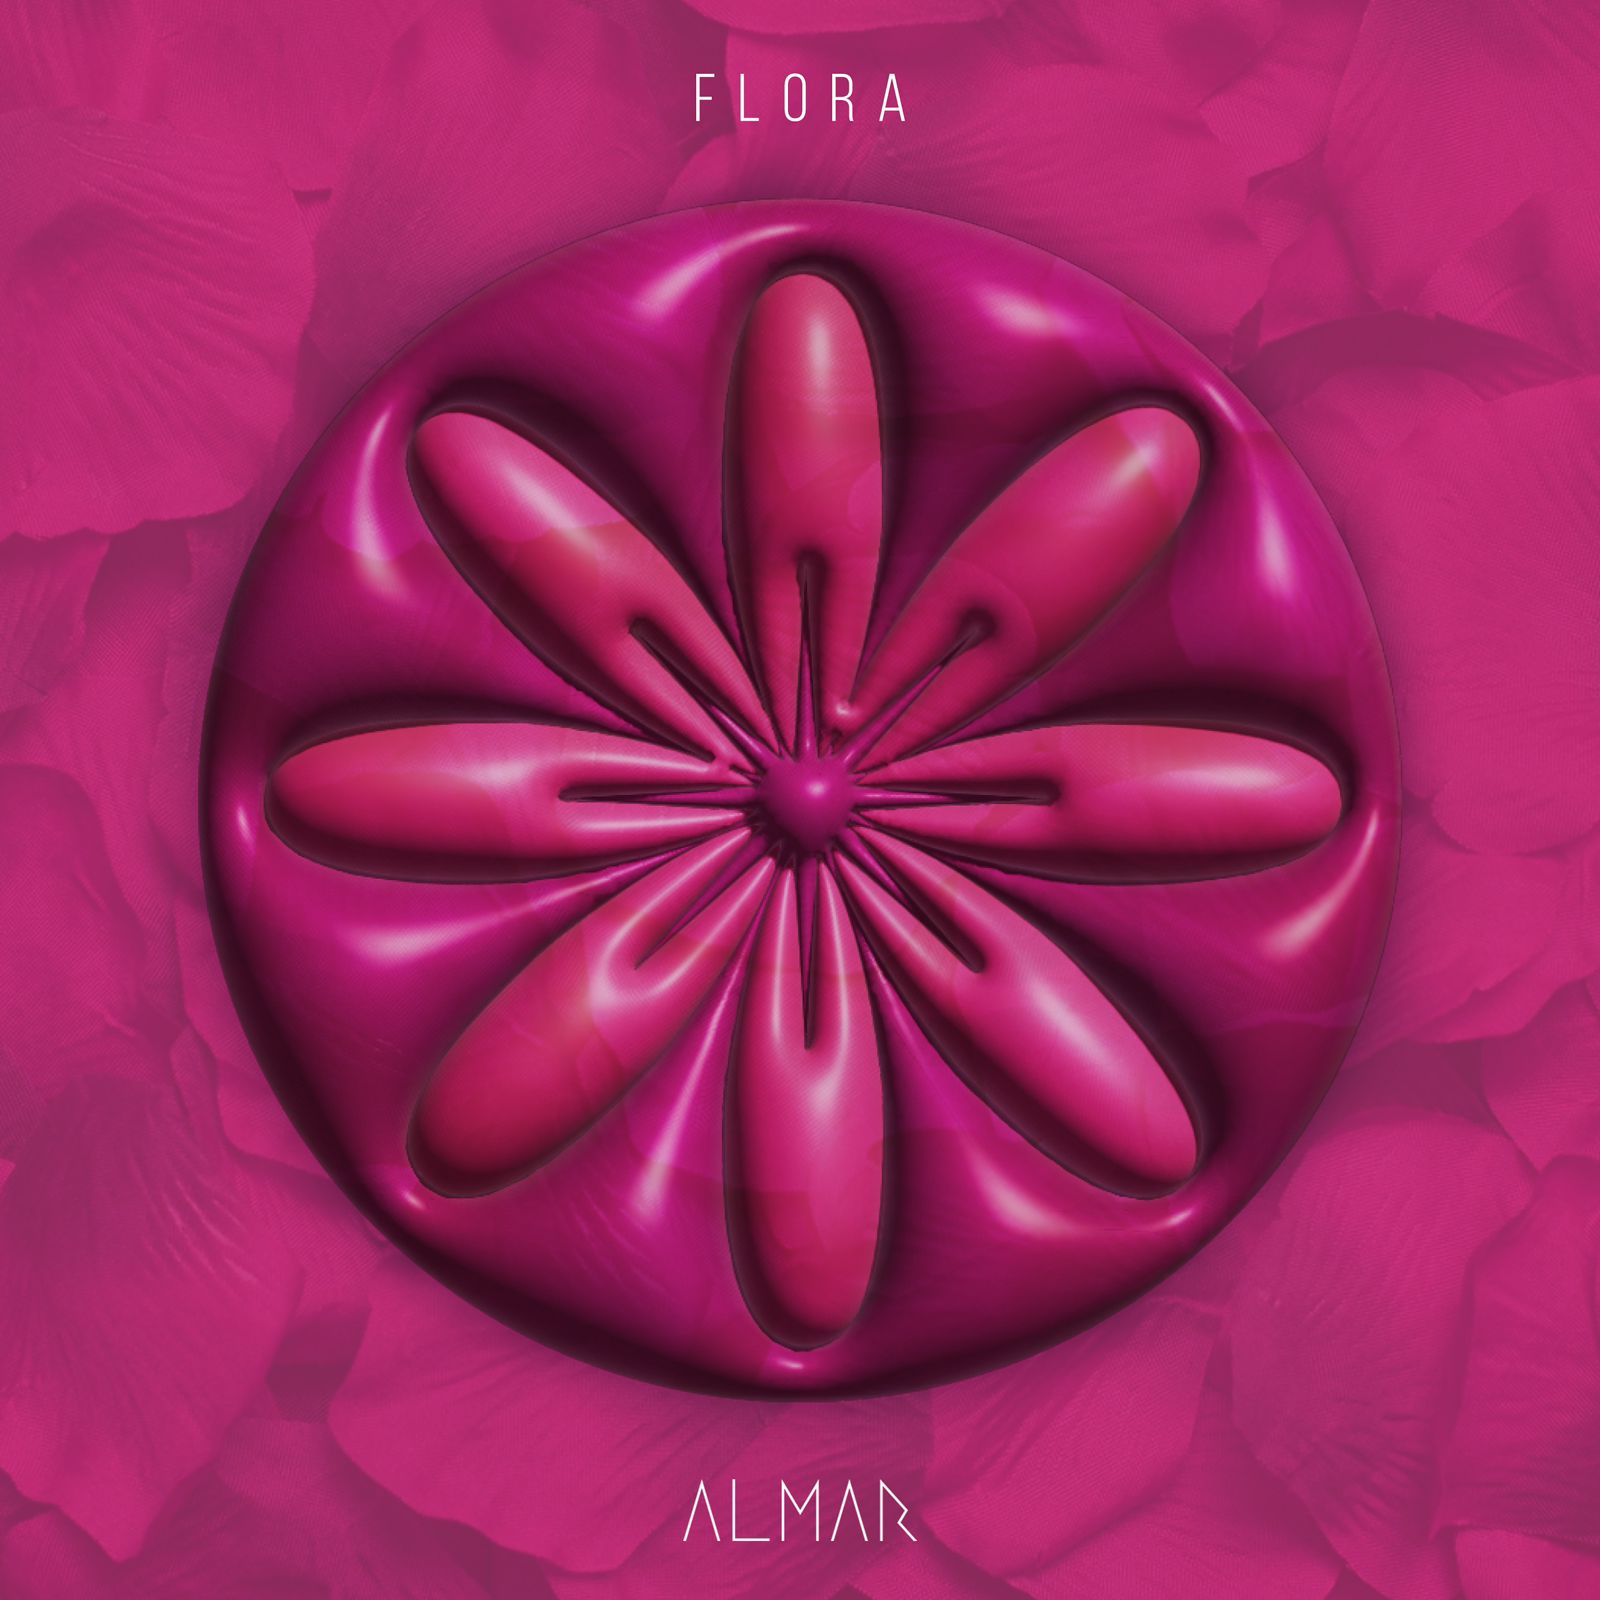 Almar se prepara para lançar seu mais novo EP “Flora”; Veja a capa com exclusividade